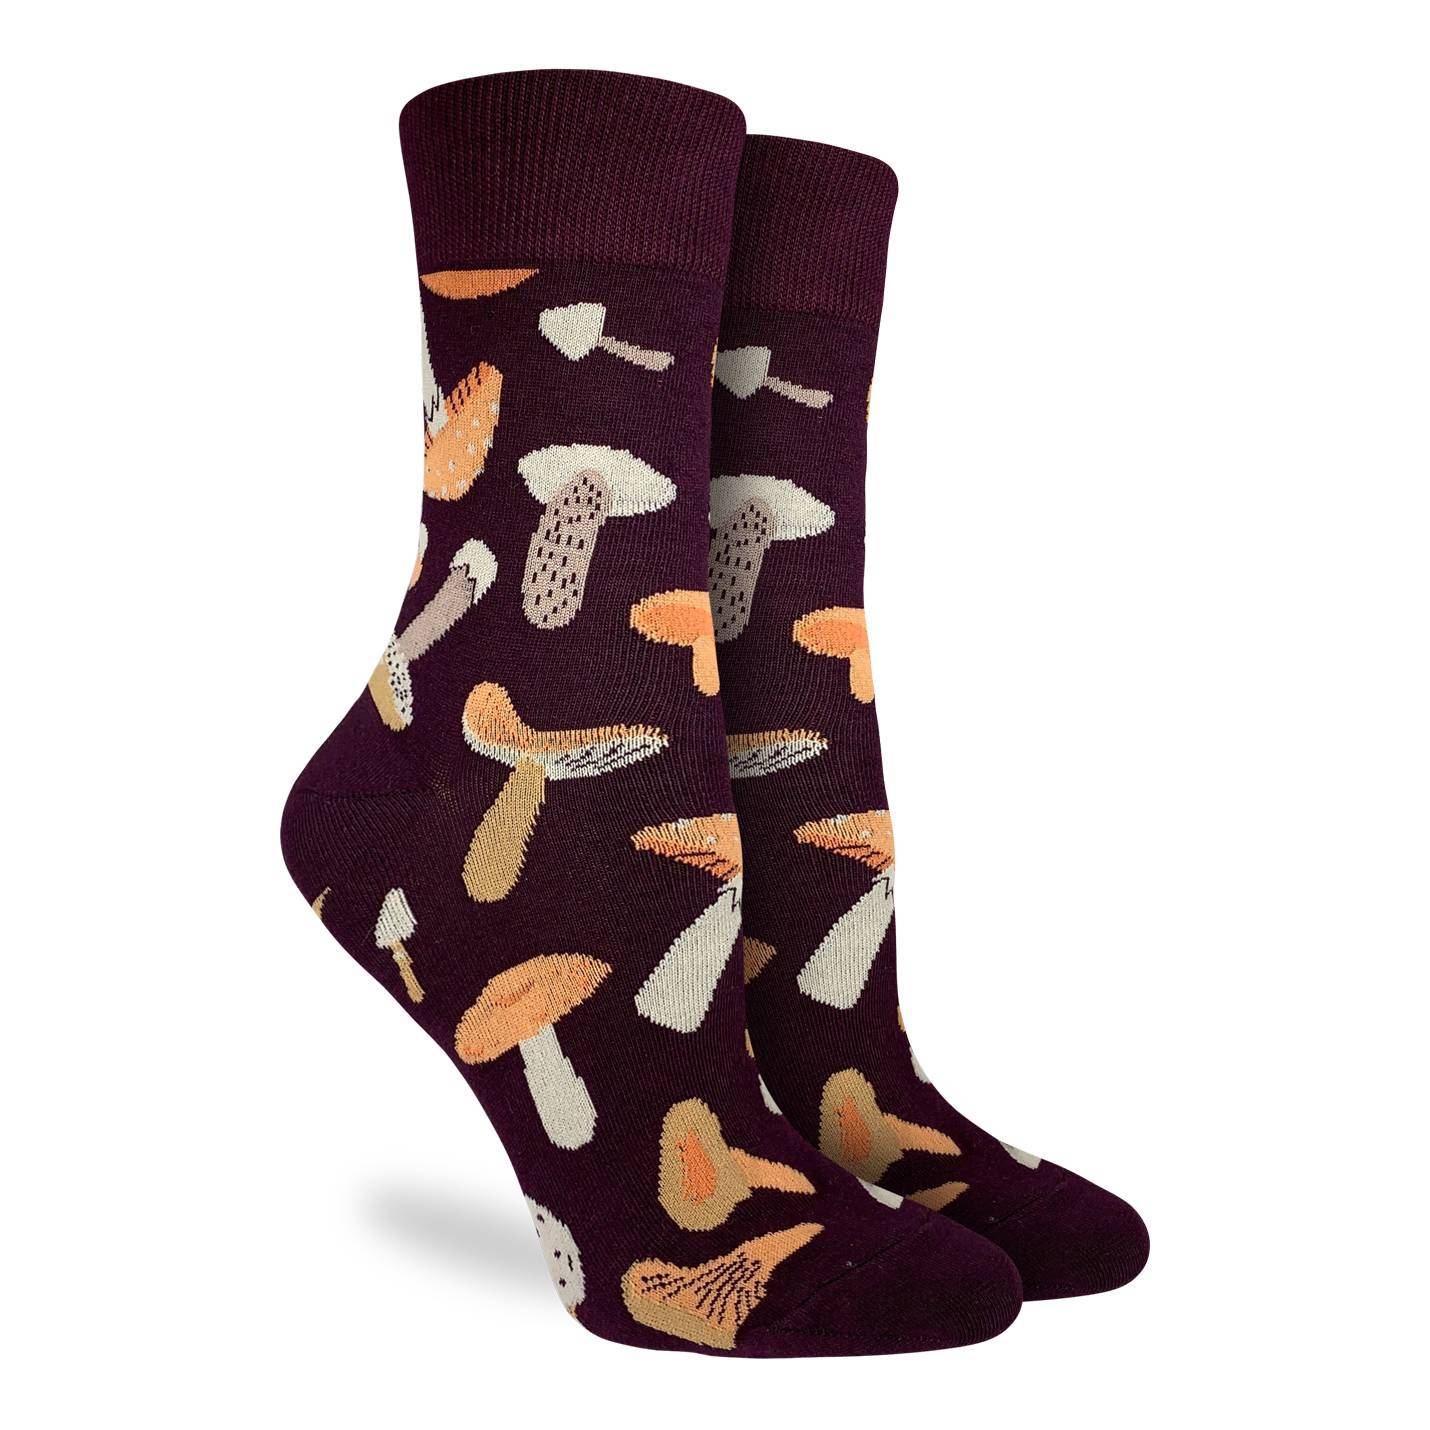 Good Luck Sock - Women's Mushrooms Socks